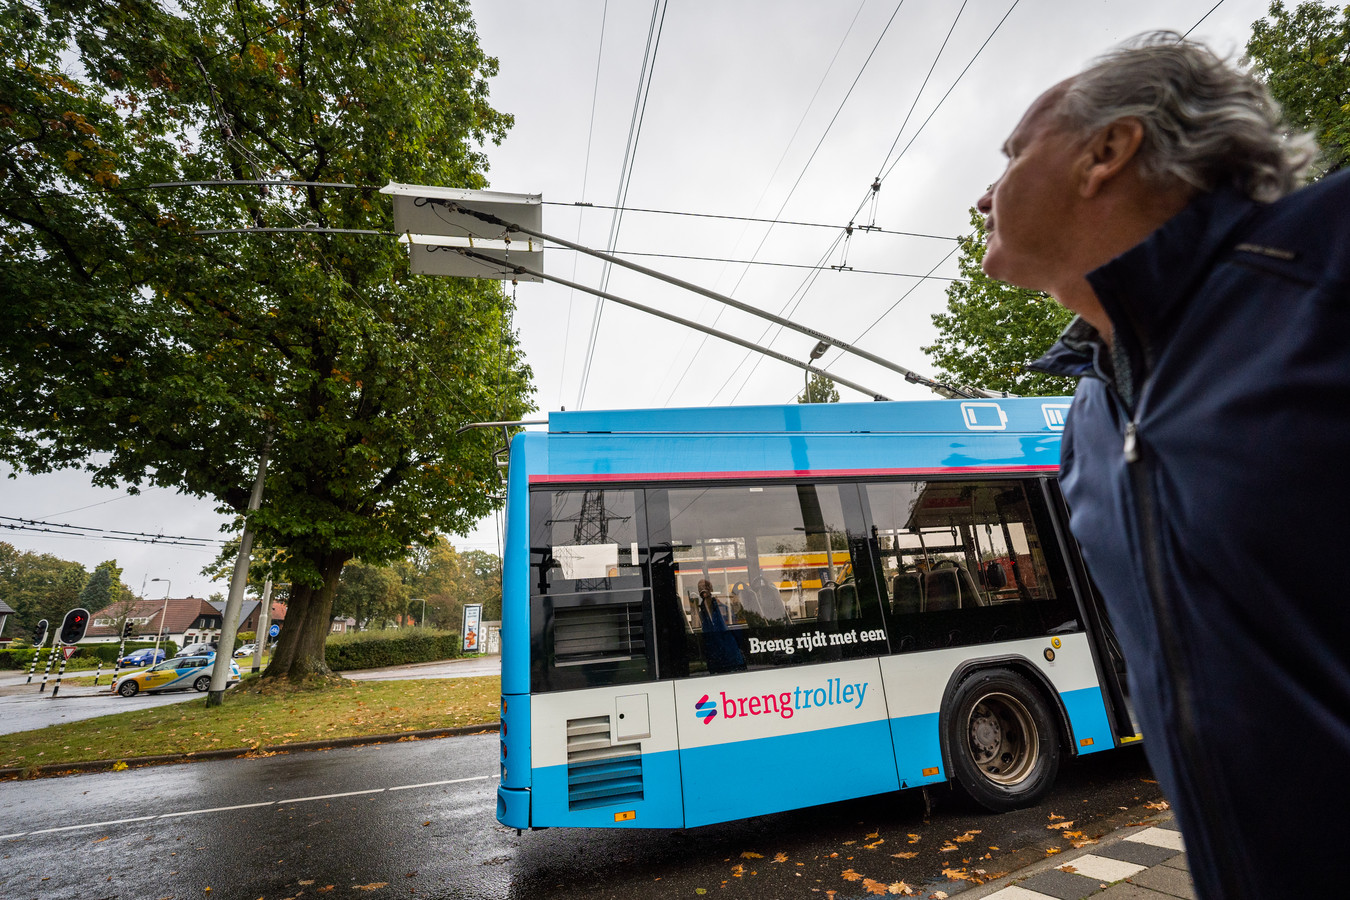 De trolley 2.0 komt er echt: en vervoersbedrijf hebben tien bussen | Foto | AD.nl